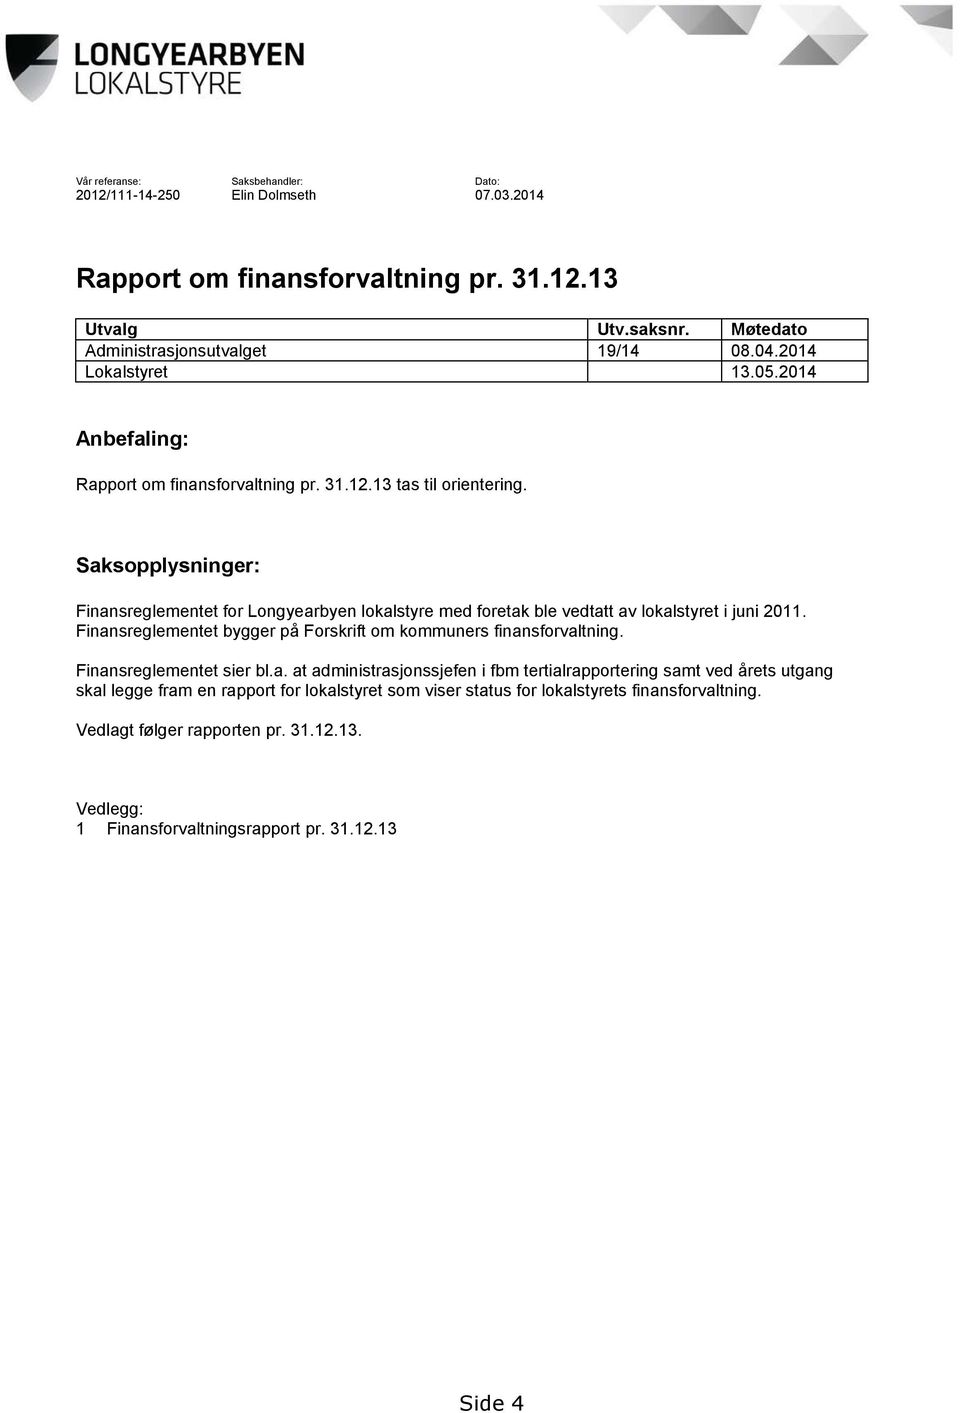 Saksopplysninger: Finansreglementet for Longyearbyen lokalstyre med foretak ble vedtatt av lokalstyret i juni 2011. Finansreglementet bygger på Forskrift om kommuners finansforvaltning.